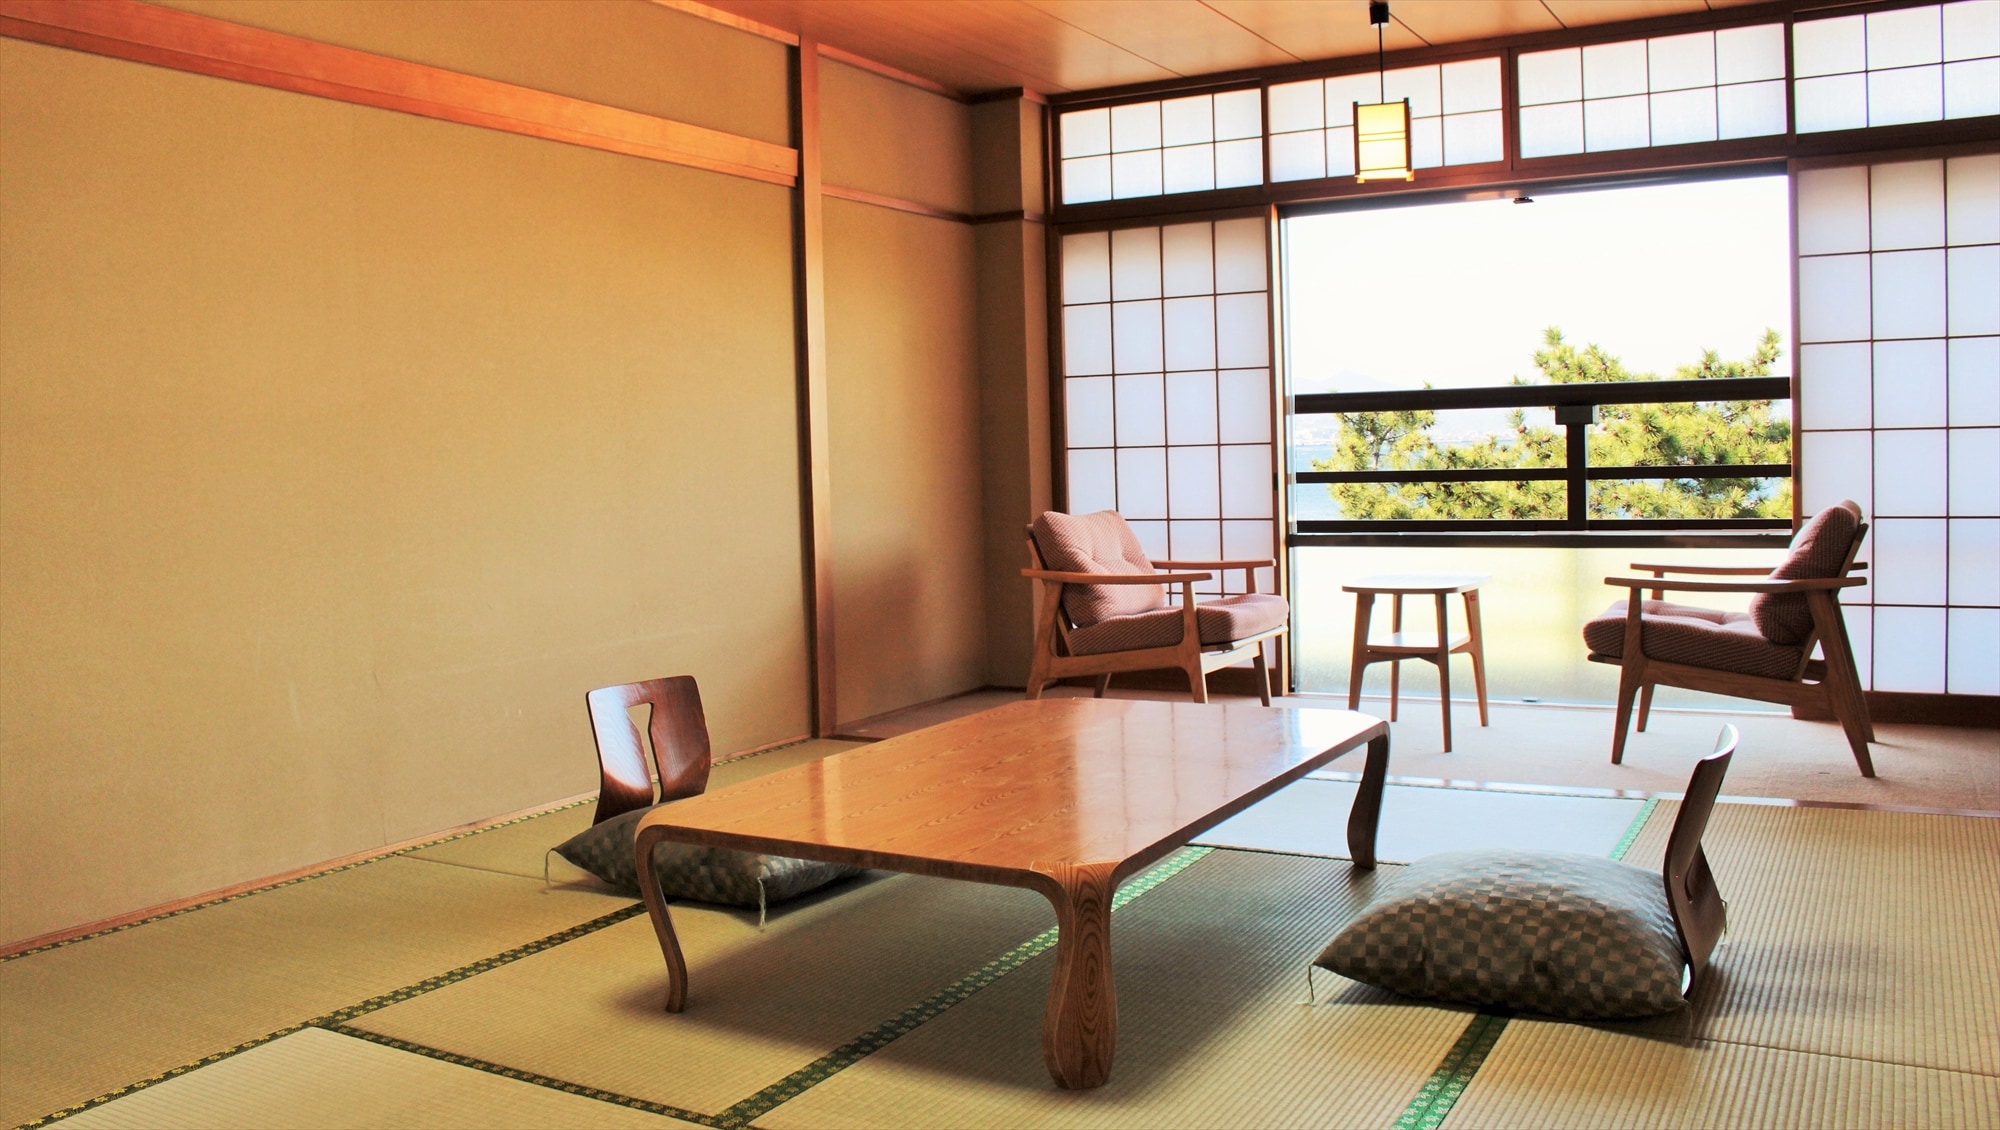 可眺望瀨戶內海廣島夜景的海景日式房間【禁煙】36平方米的日式房間，10張榻榻米+寬邊，浴室和衛生間